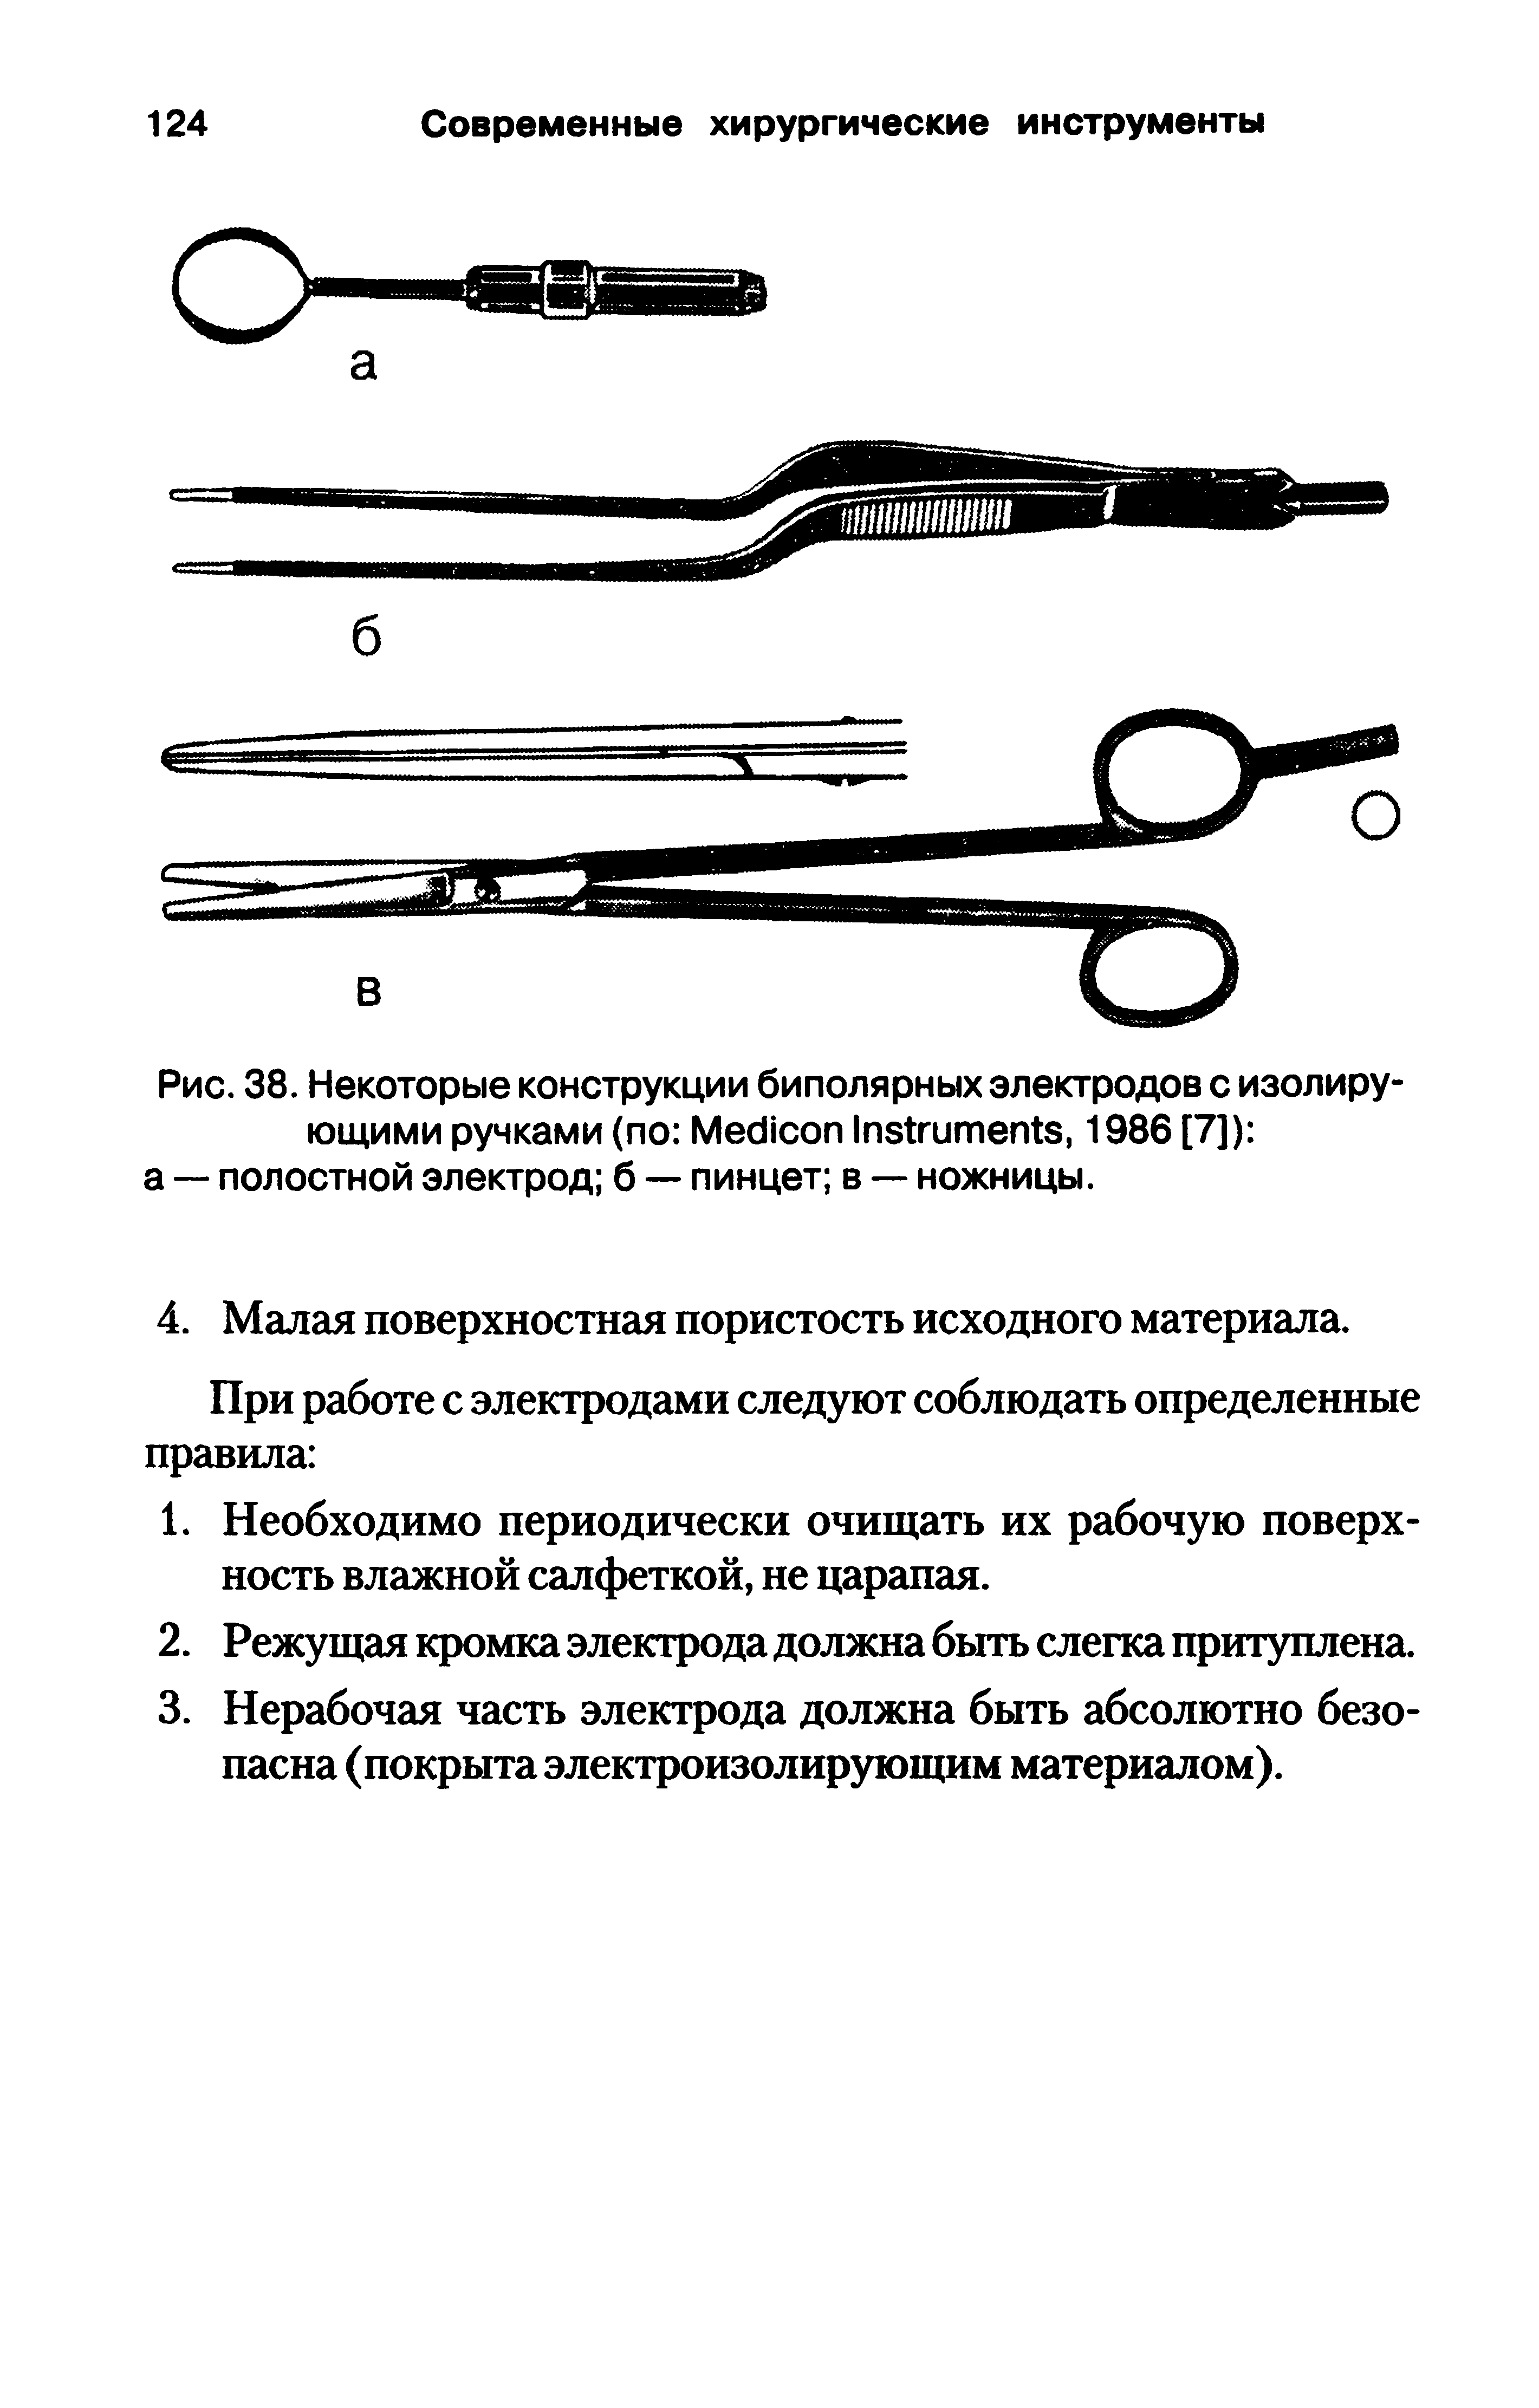 Рис. 38. Некоторые конструкции биполярных электродов с изолирующими ручками (по M I , 1986 [7]) а — полостной электрод б — пинцет в — ножницы.